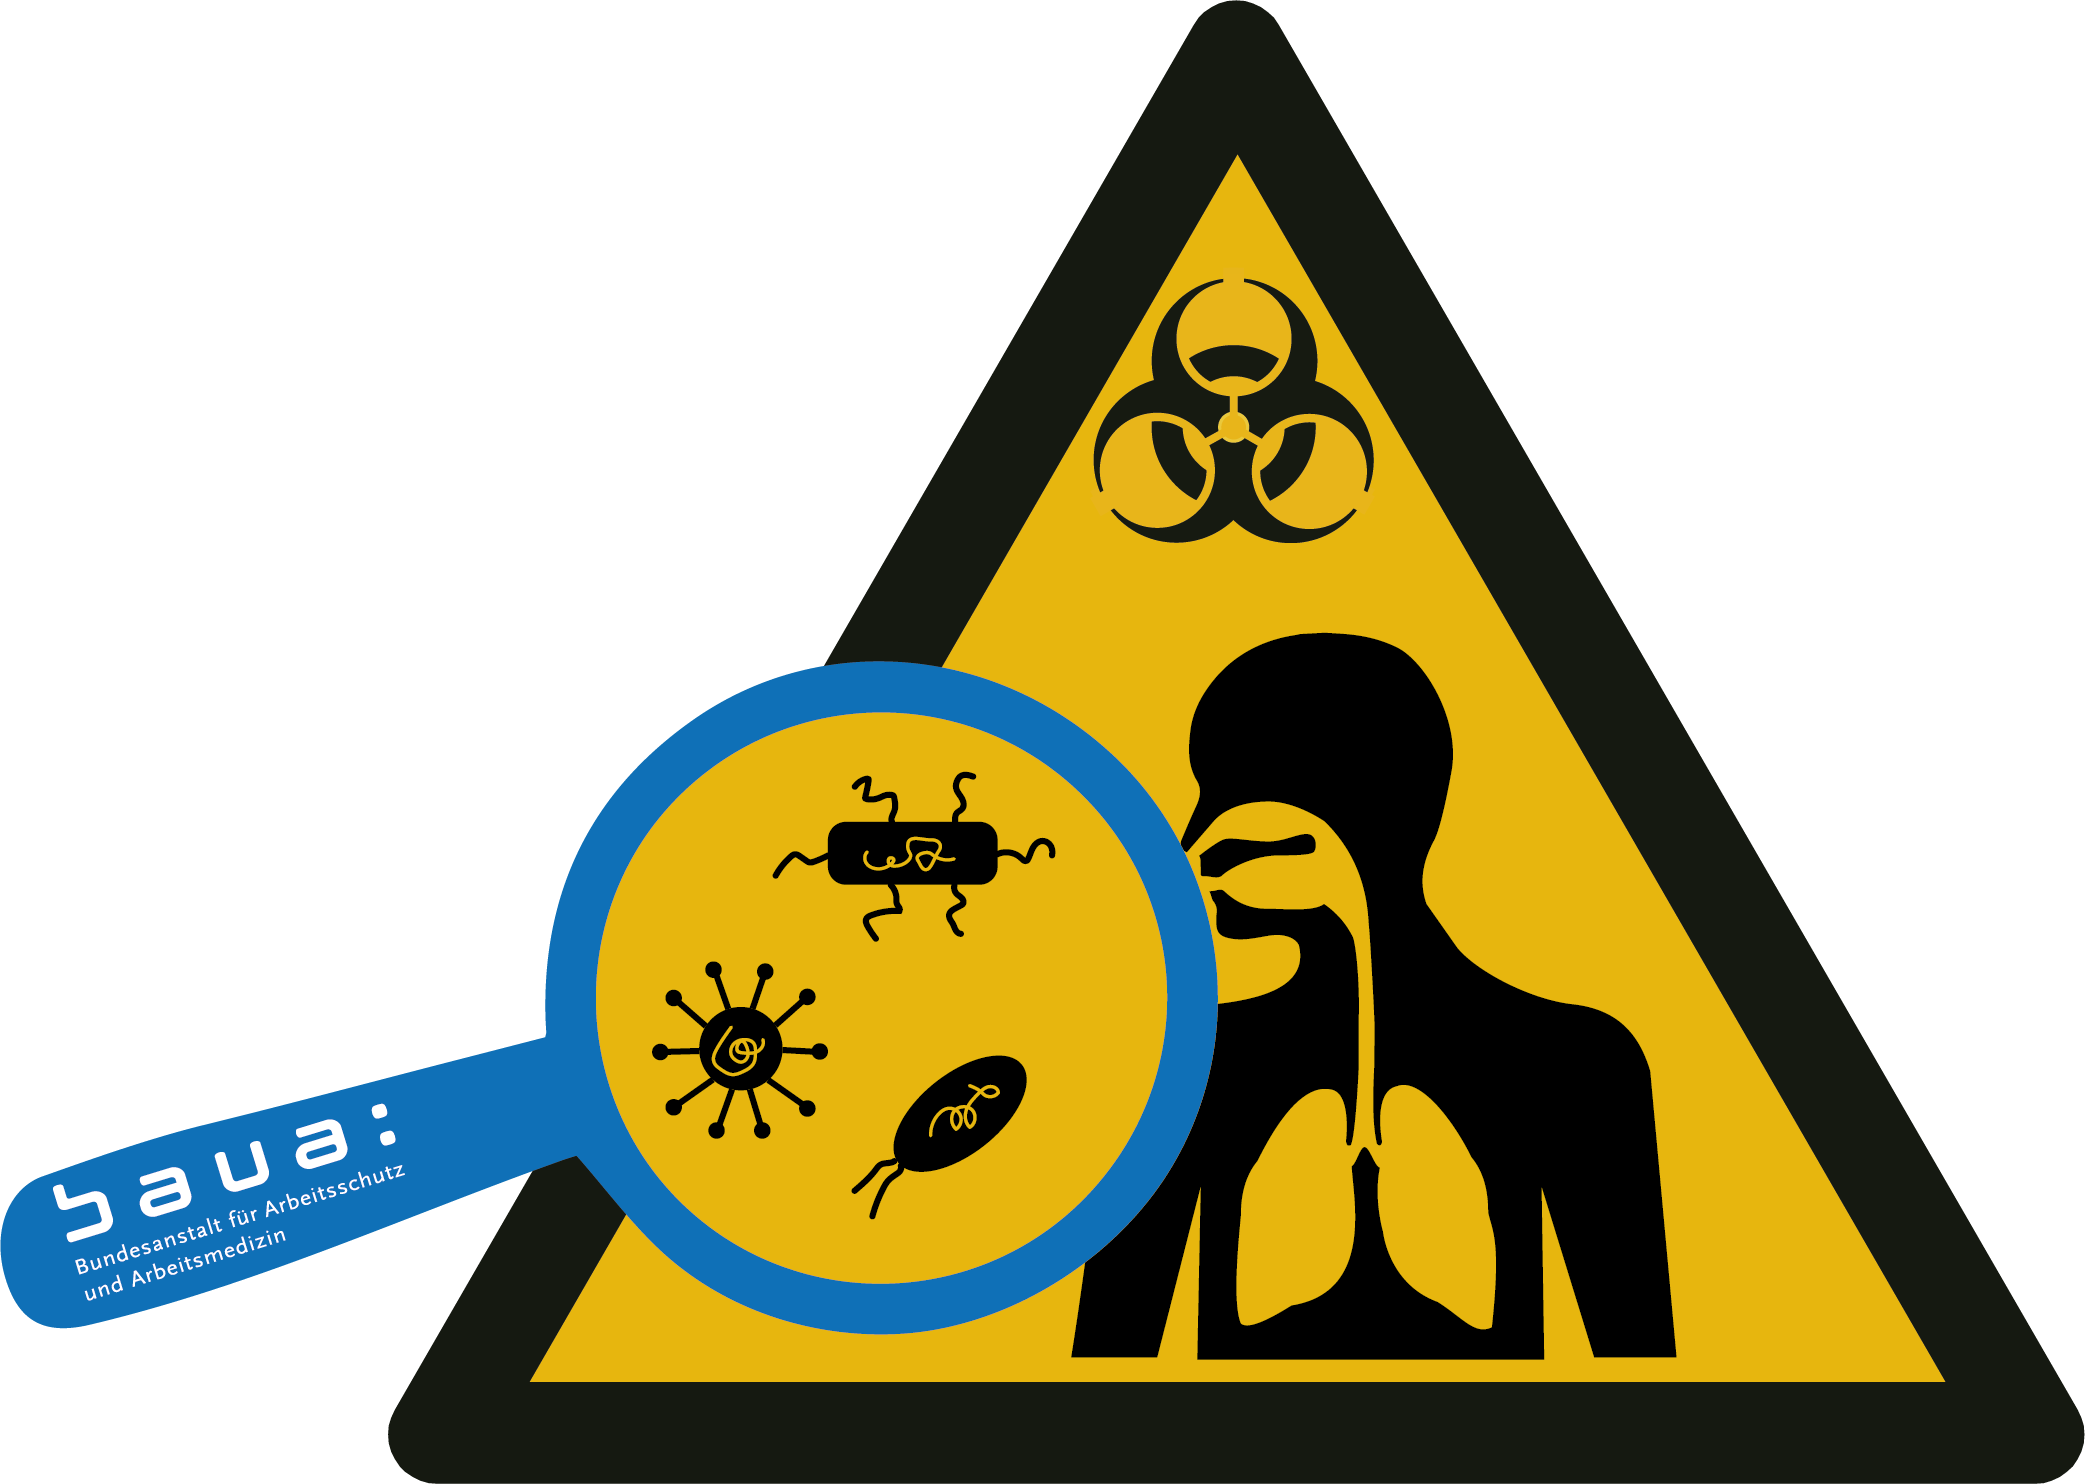 Entwurf Warnsymbol Biogefährdung mit zusätzlichen Elementen für Viren und Bakterien sowie Atemwegssystem Mensch 